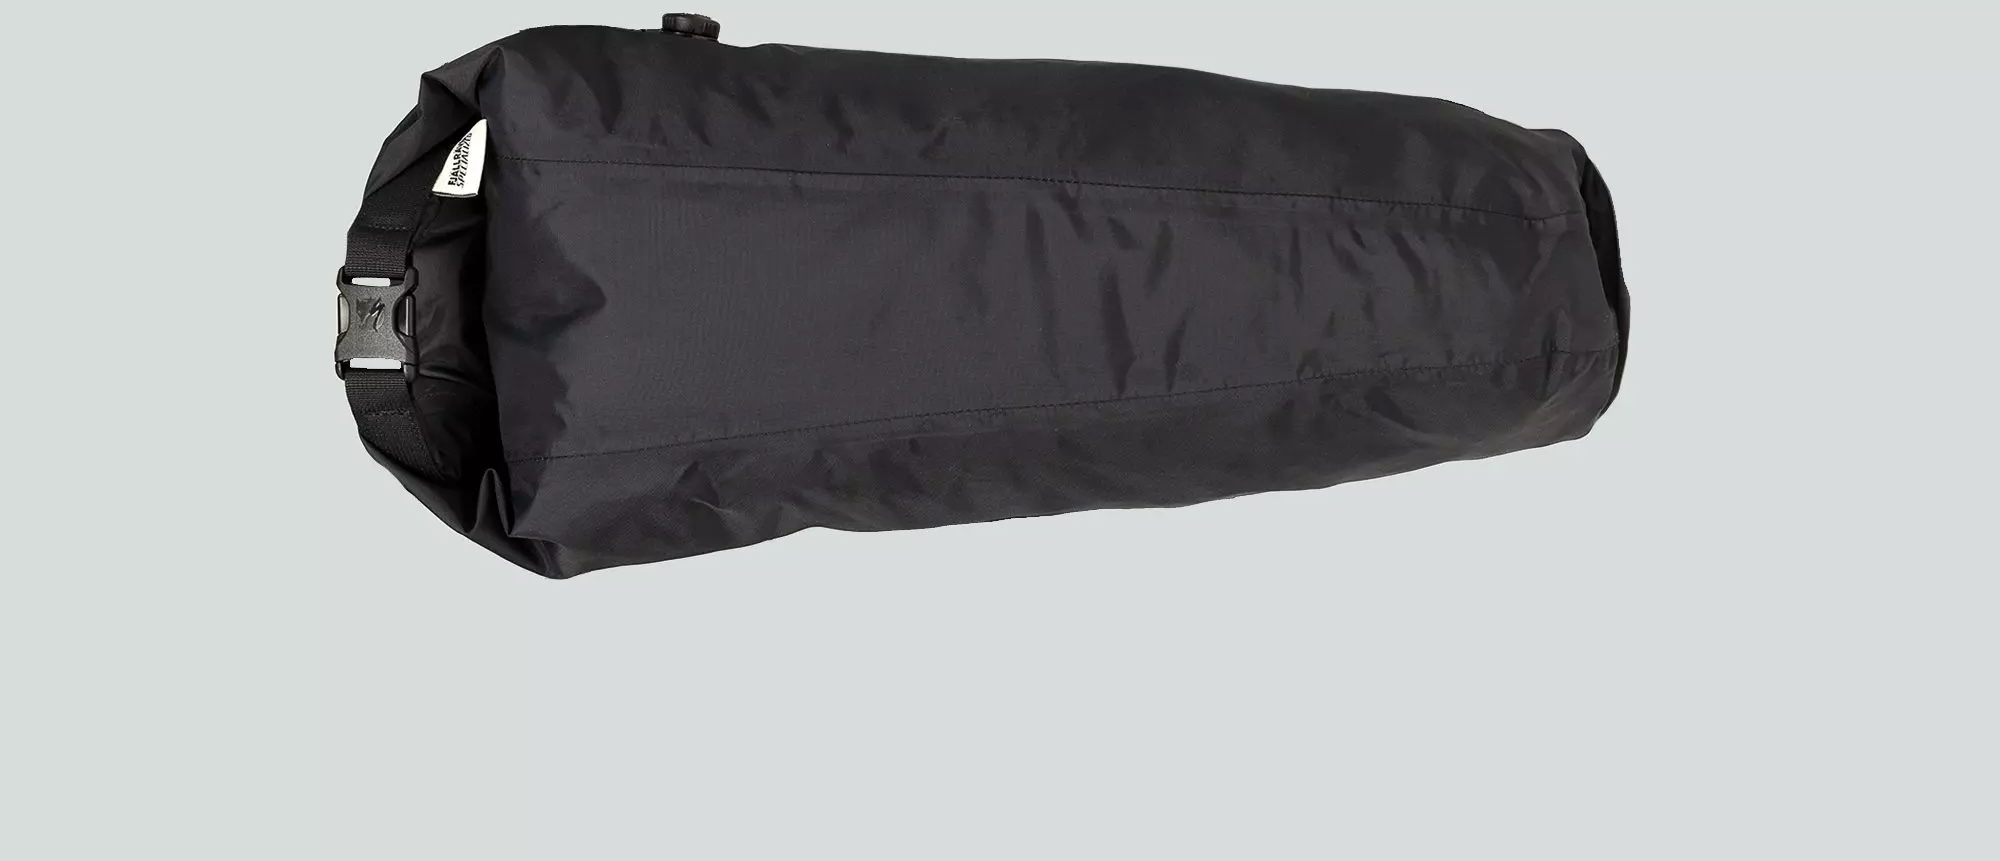 Specialized /Fjallraven Seatbag Drybag 10L Black